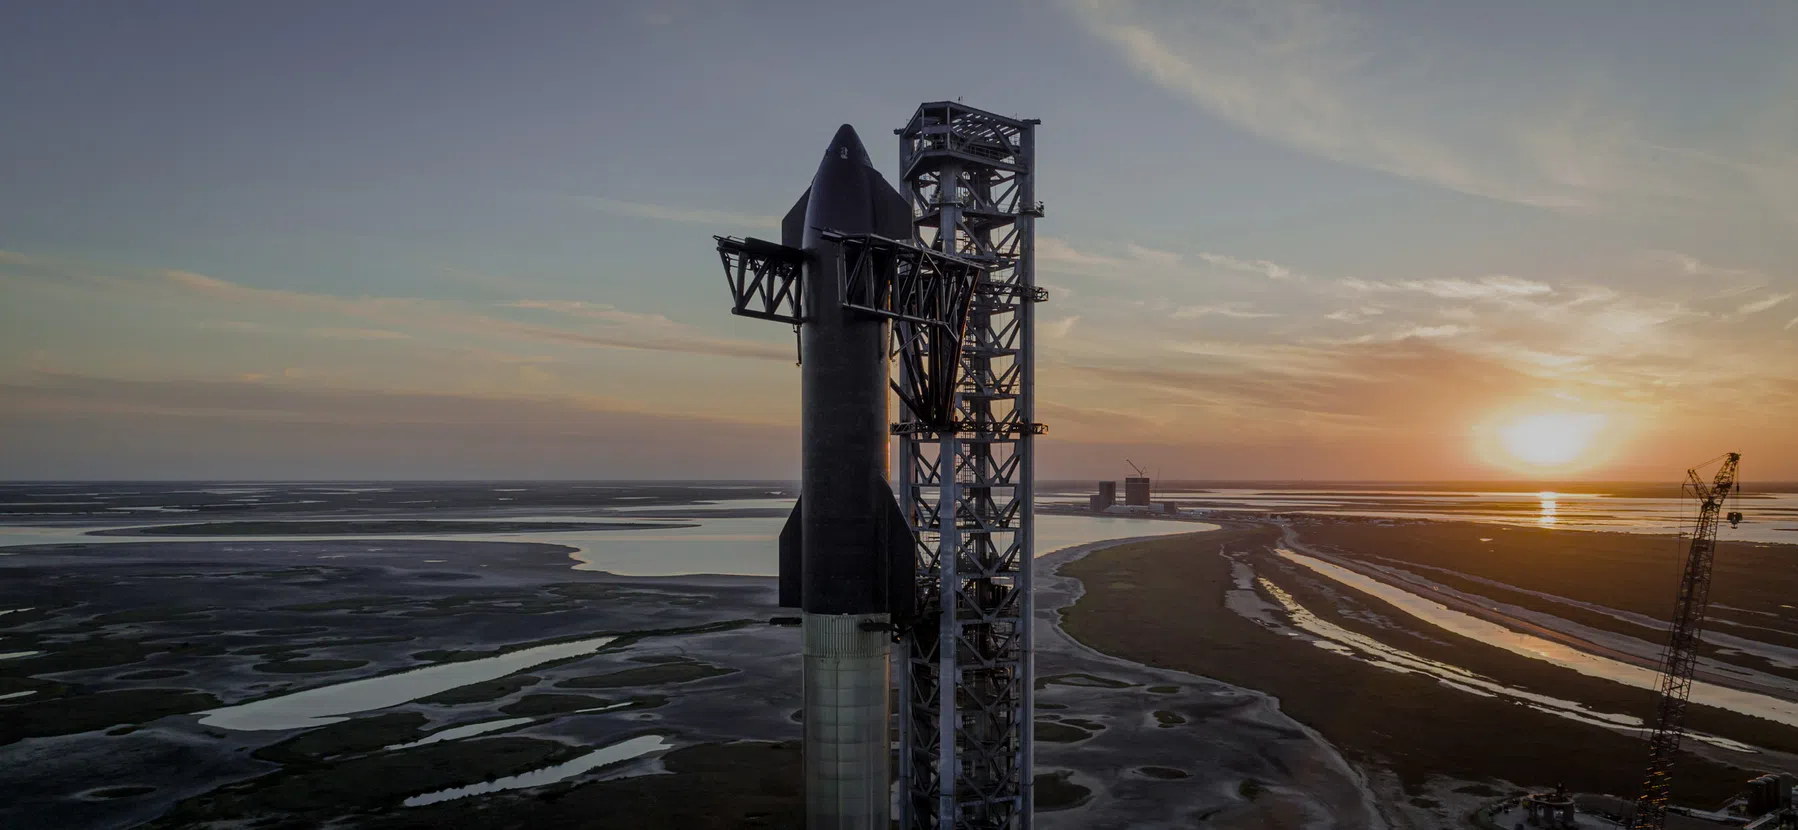 Derde keer wél gelukt: SpaceX lanceert grootste raket ooit